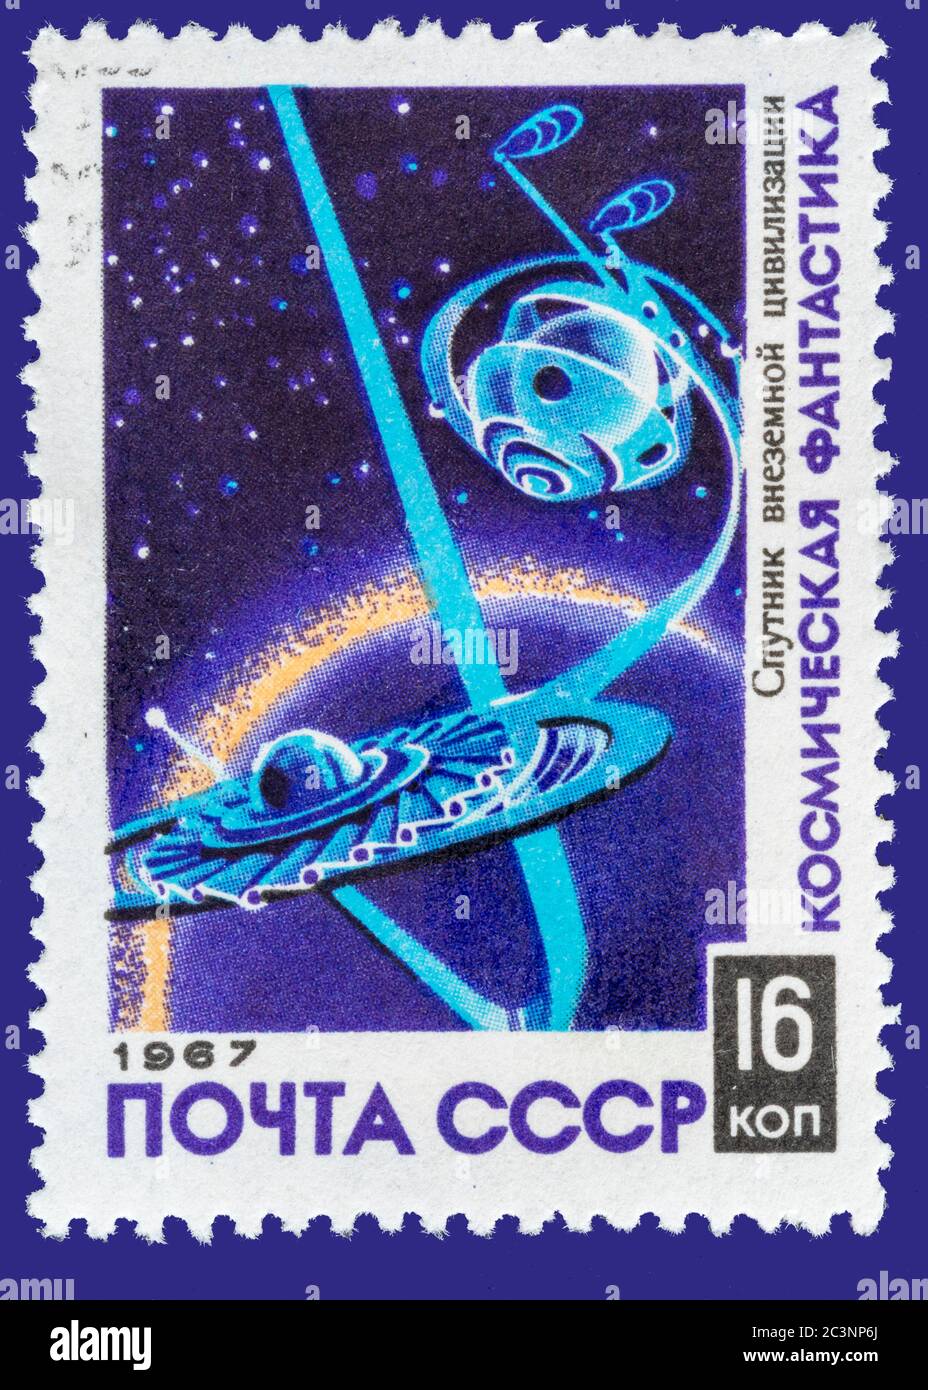 Vintage annullato francobollo dall'Unione Sovietica circa 1967. Timbro colorato di una scena spaziale. Impostare su una cartella blu scuro. Foto Stock